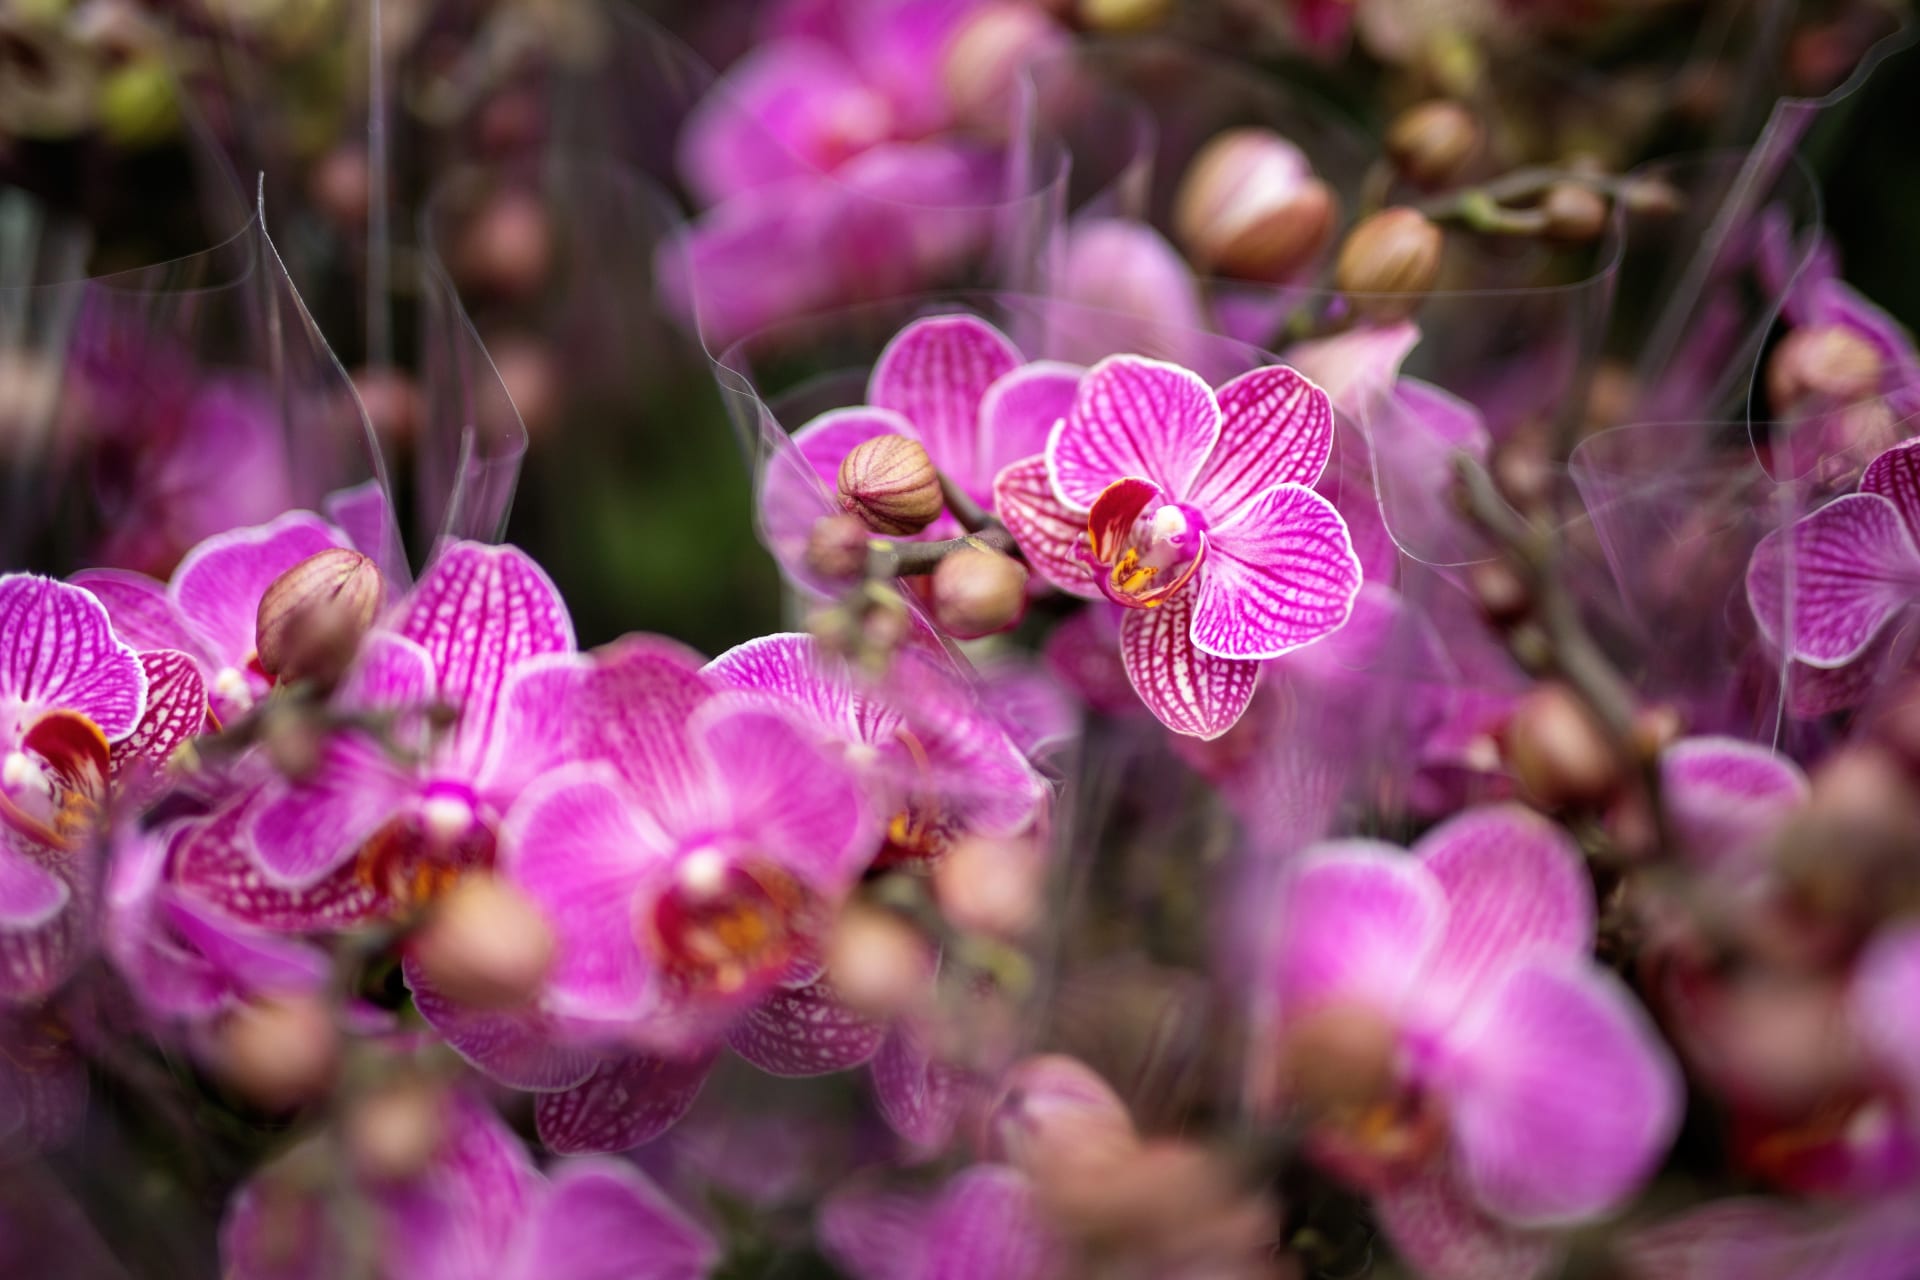 Milovníci orchidejí si také některou z krásek mohou i zakoupit a odnést domů.